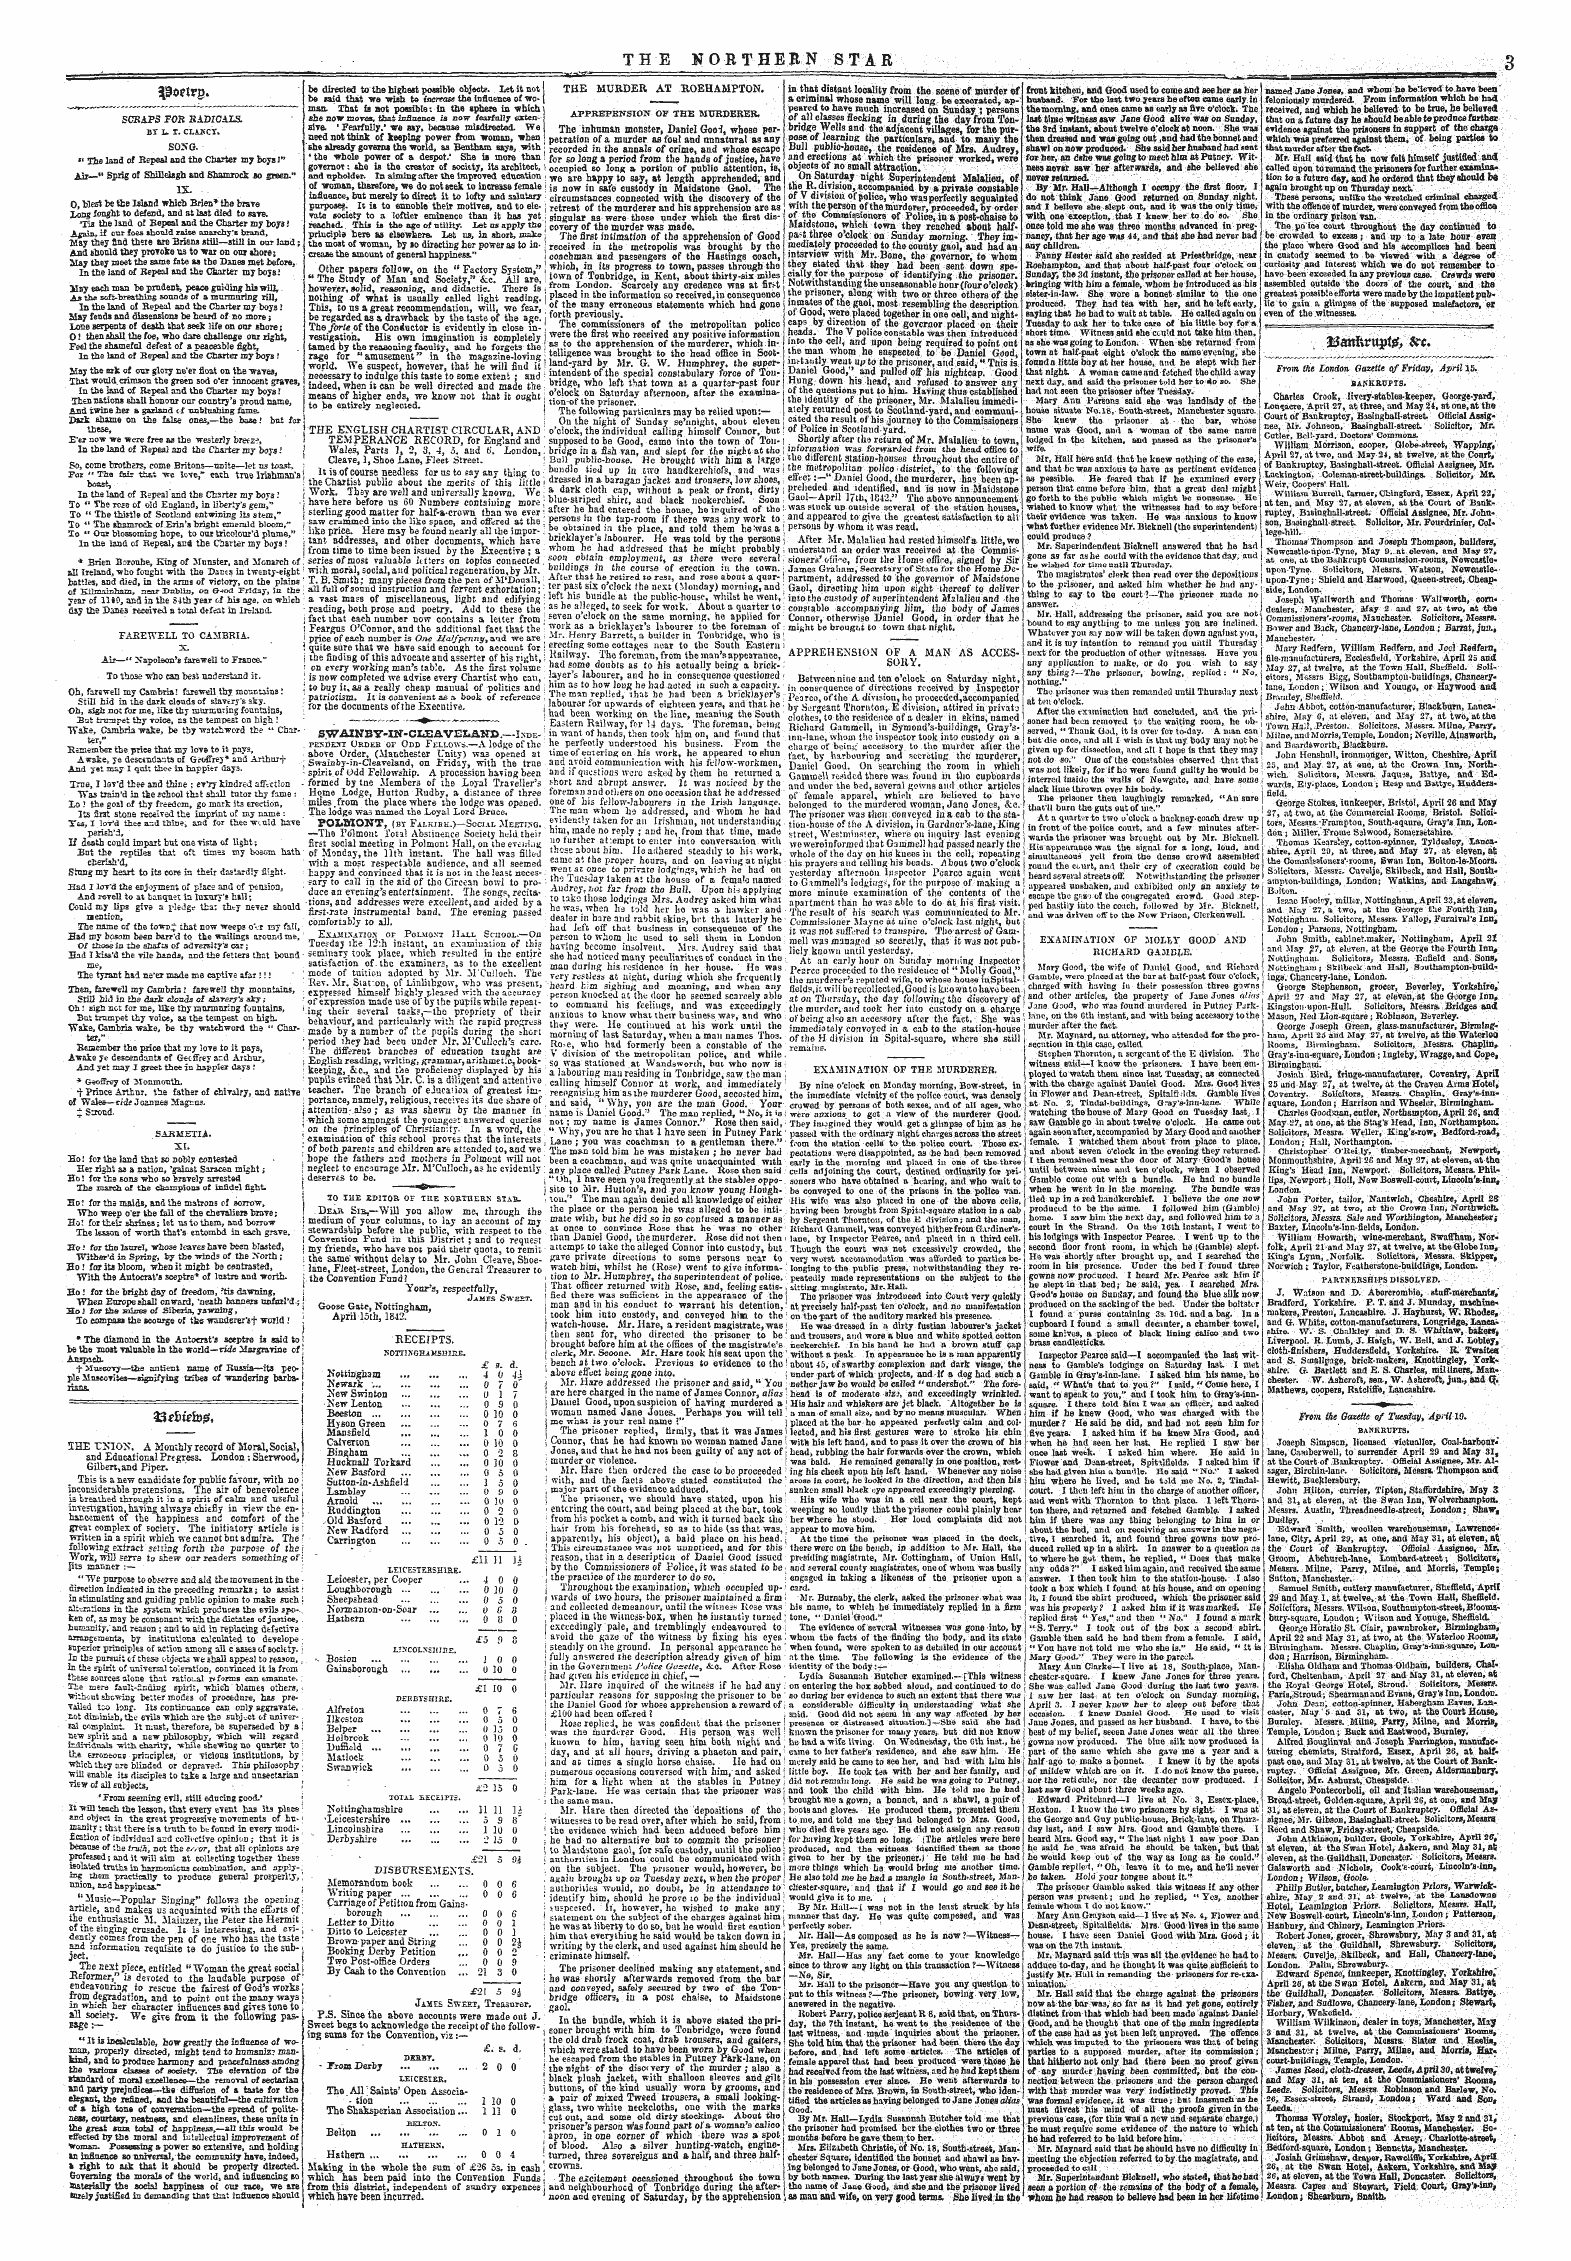 Northern Star (1837-1852): jS F Y, 4th edition - Siortpg